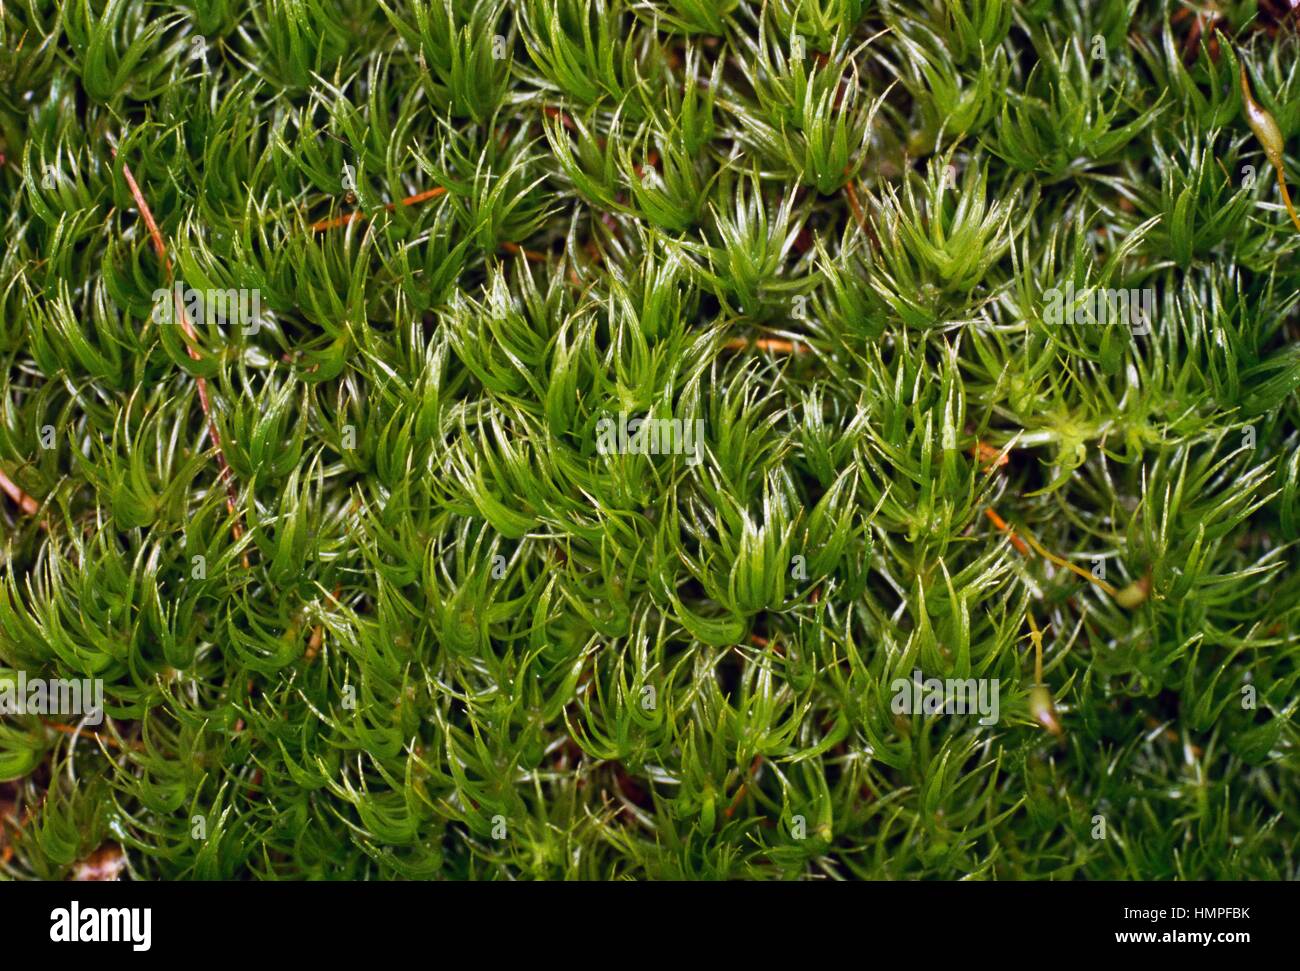 Dicranum Moss (Dicranum majus), Dicranaceae. Stock Photo